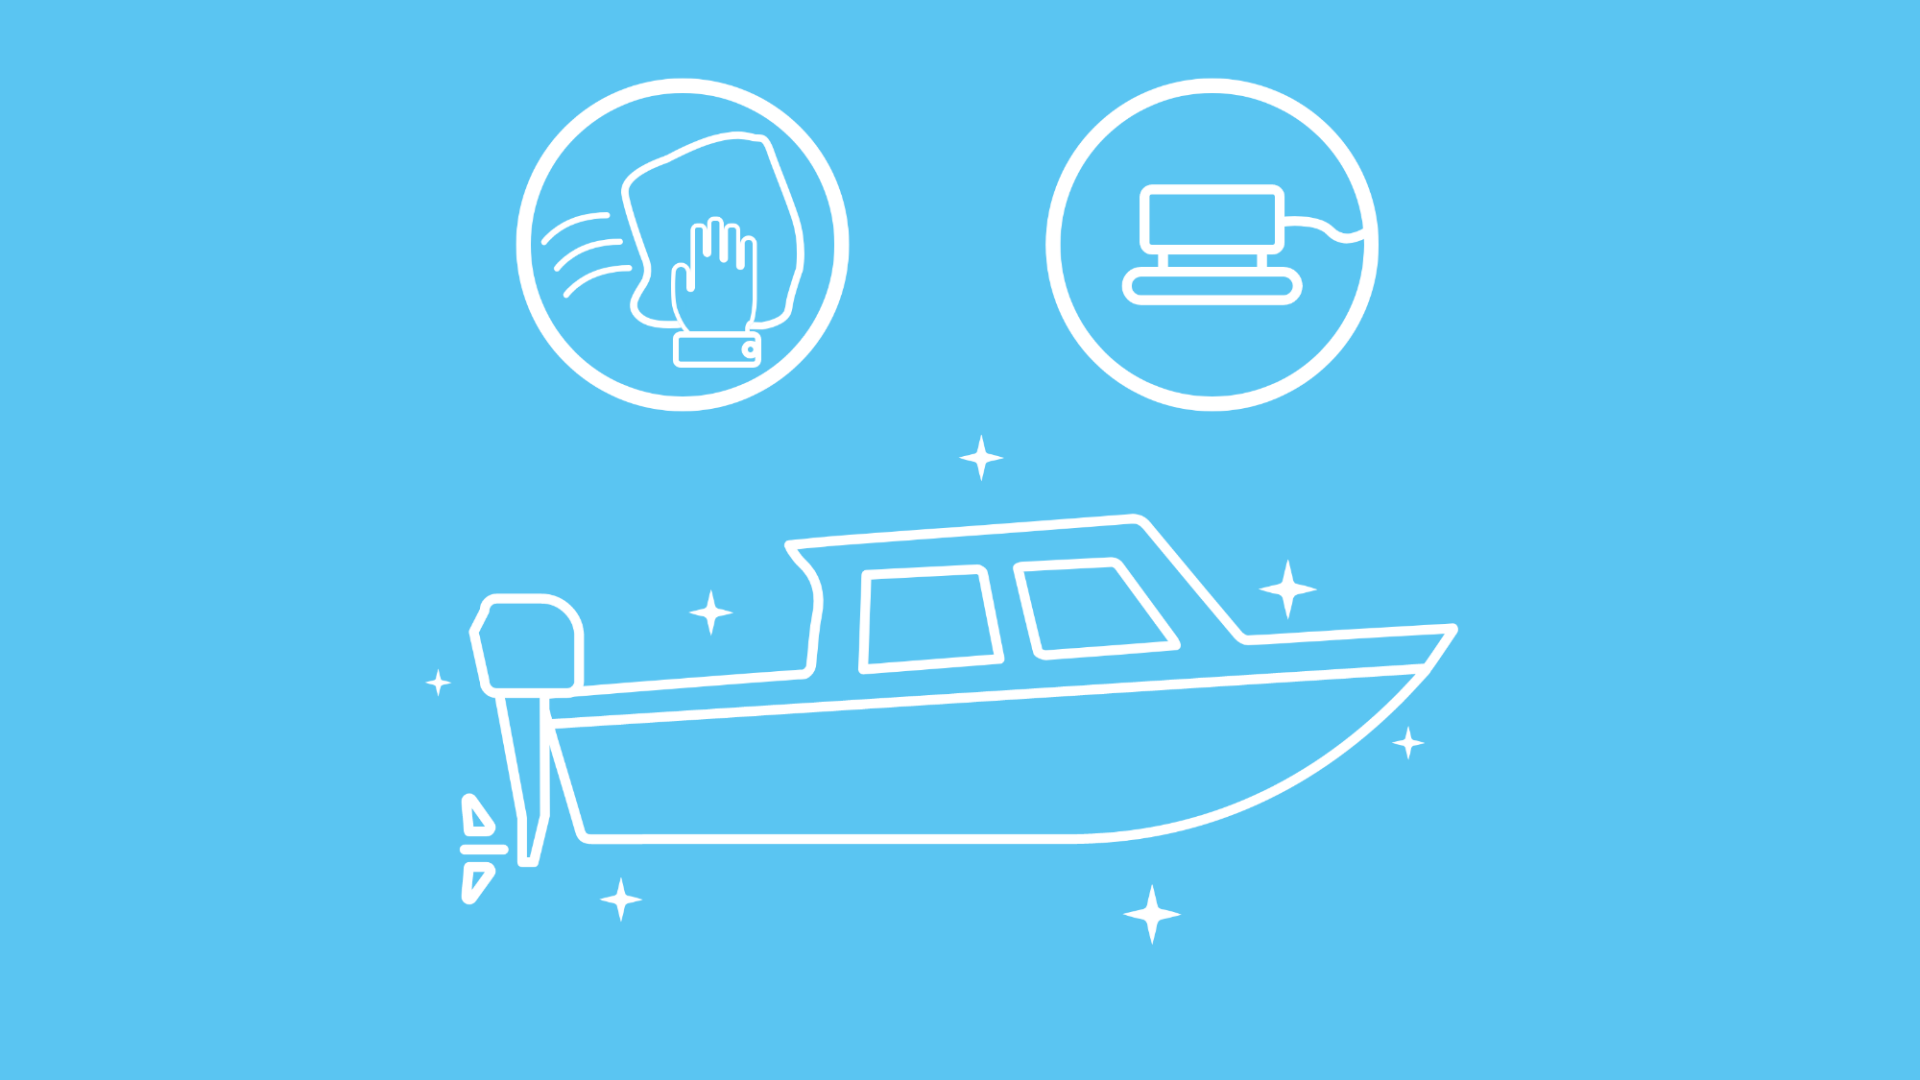 Im Fokus der Grafik steht ein frisch poliertes Boot. Um das Boot herum ist ein Icon mit einer Poliermaschine und ein Icon mit einer Hand zu sehen. 